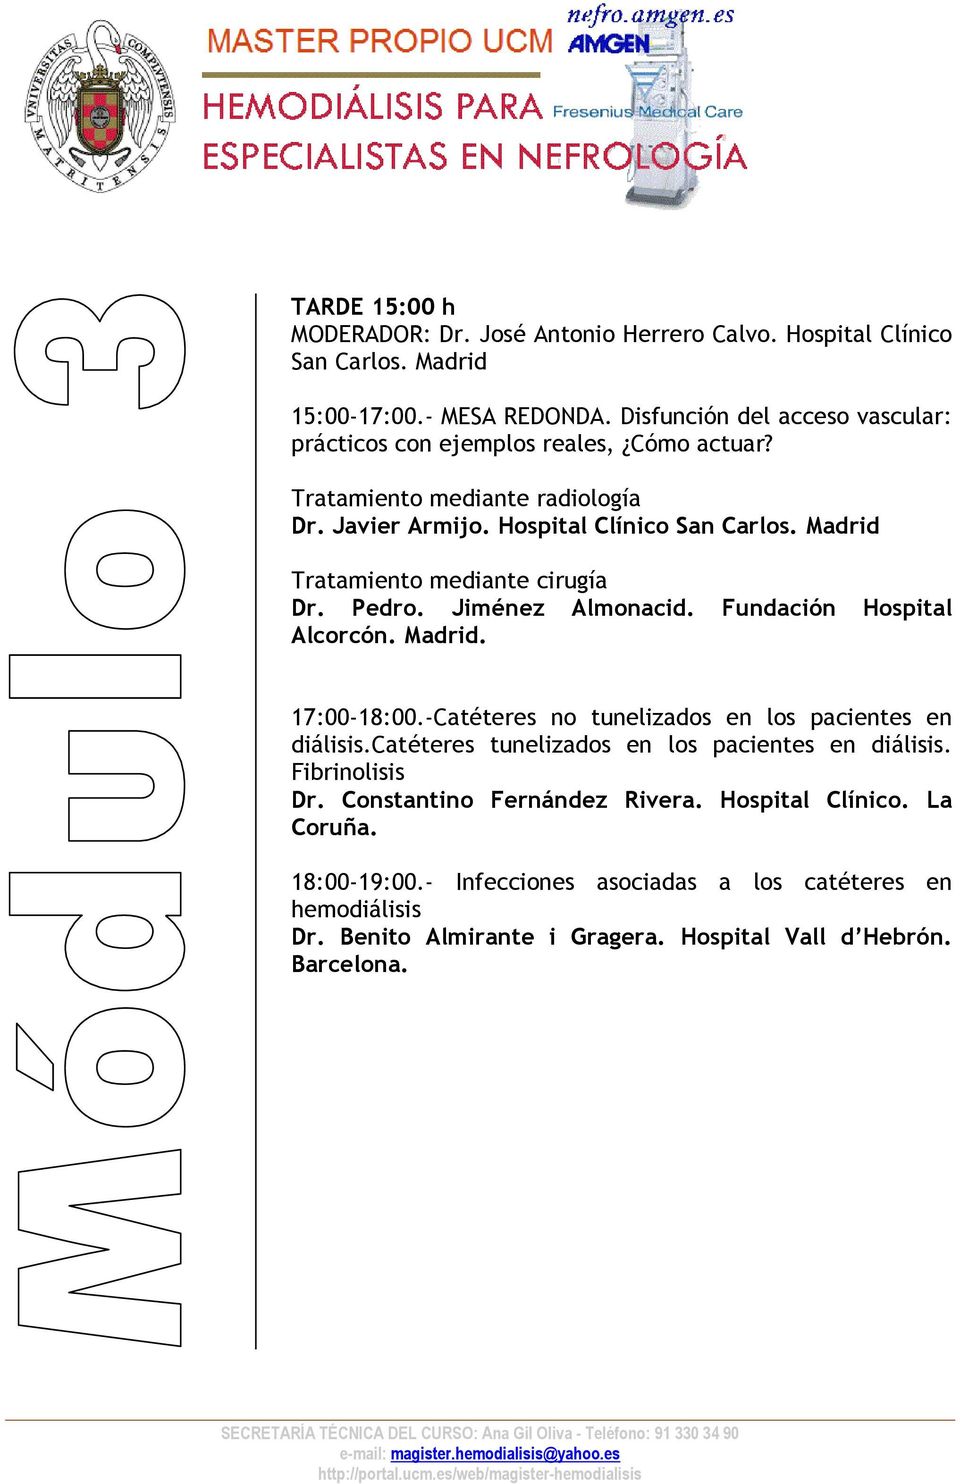 Madrid Tratamiento mediante cirugía Dr. Pedro. Jiménez Almonacid. Fundación Hospital Alcorcón. 17:00-18:00.-Catéteres no tunelizados en los pacientes en diálisis.